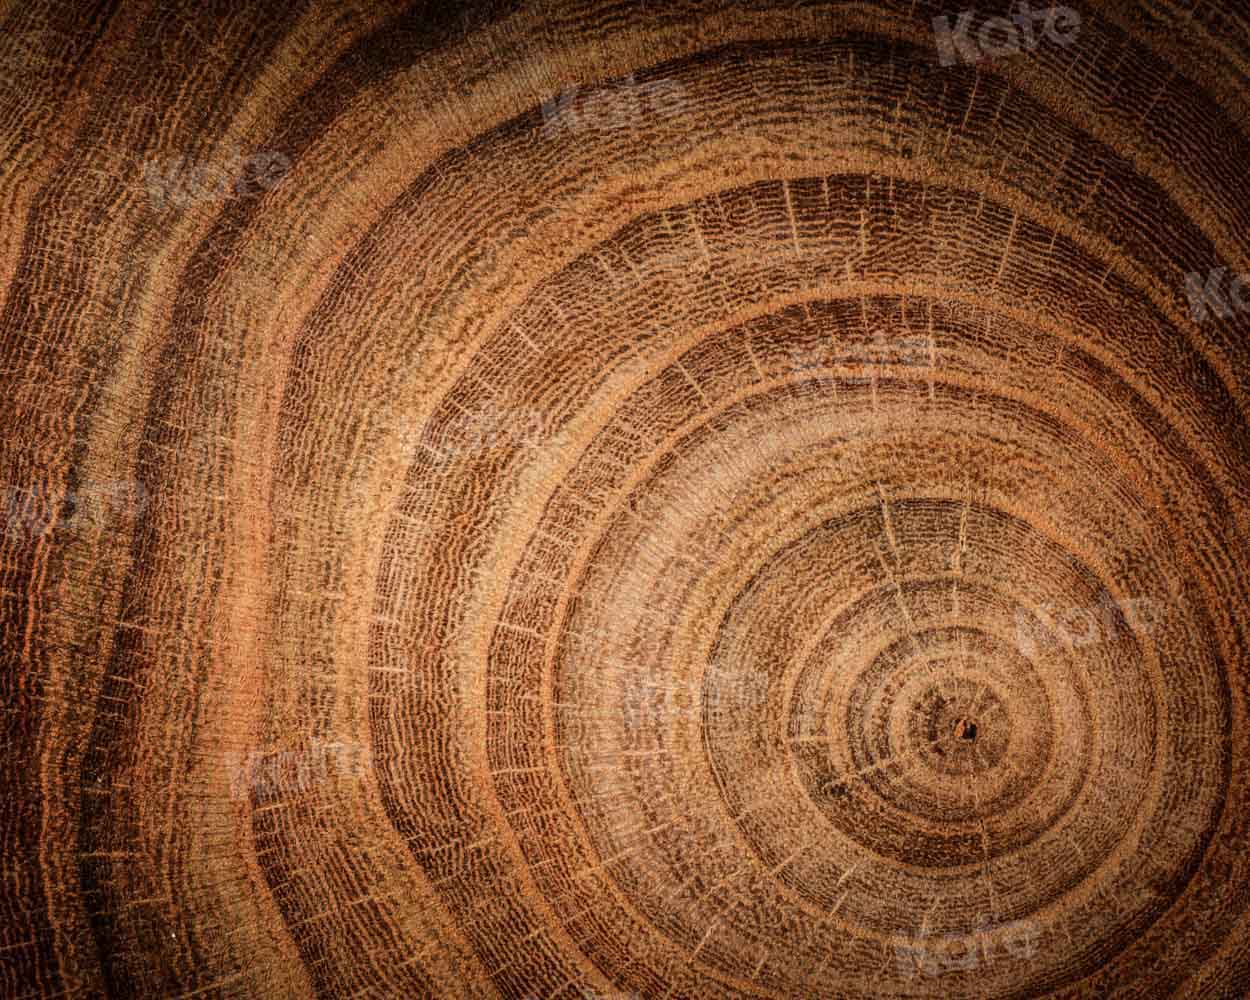 kateファインアートの背景まだらにされた木